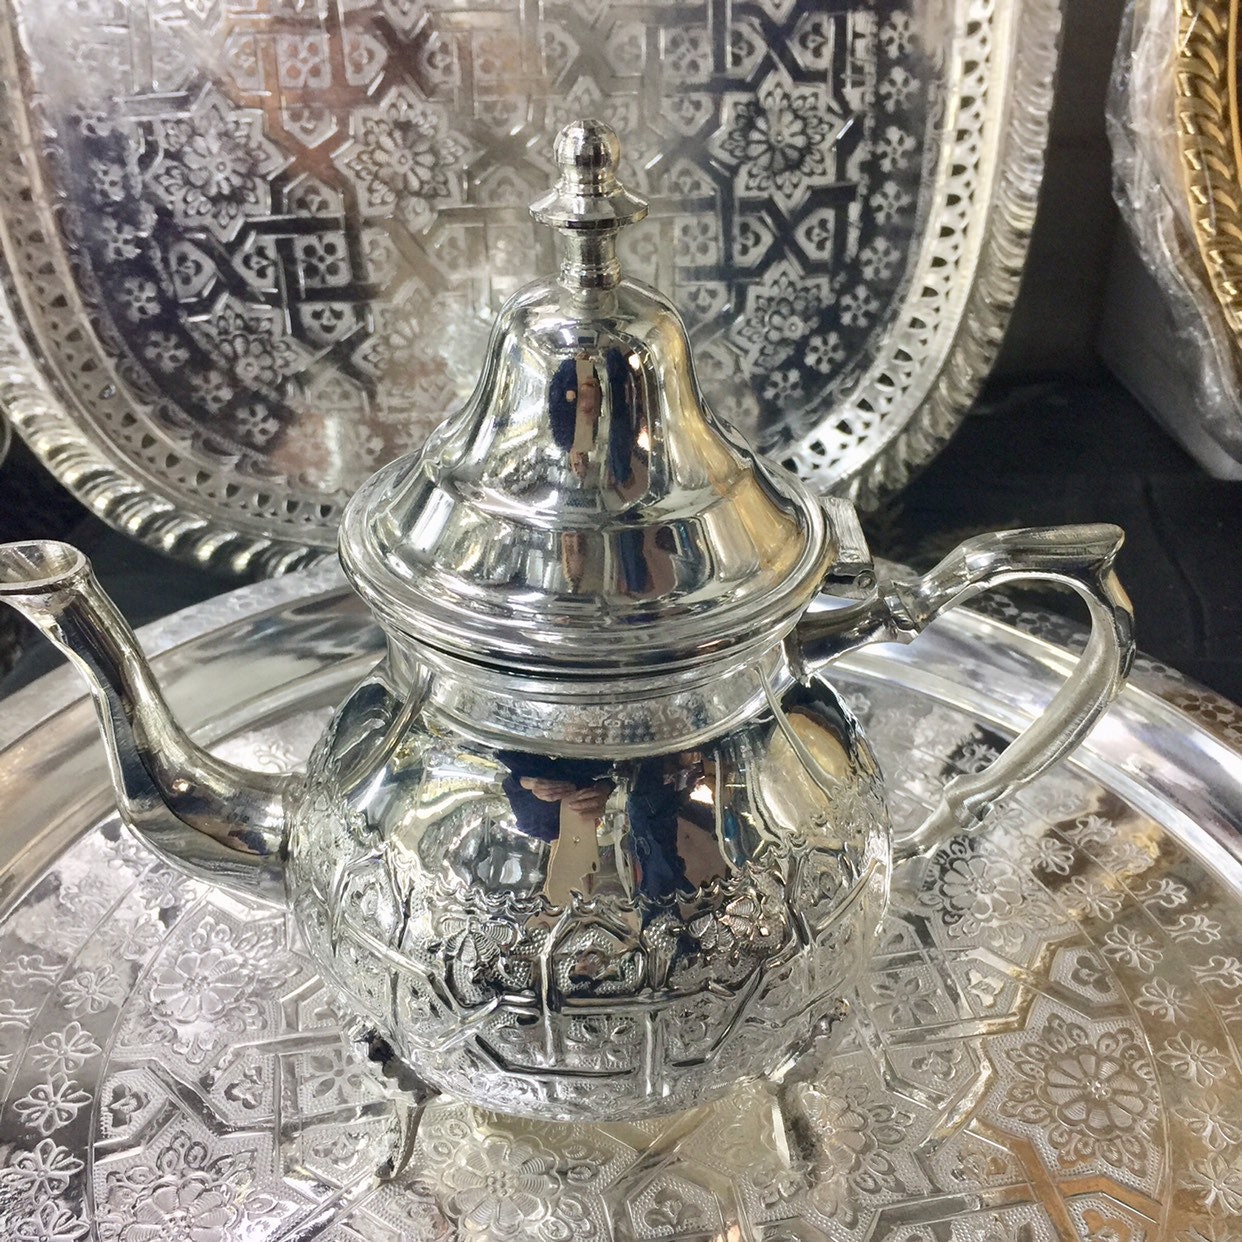 Juego de té marroqui 6 vasos + tetera grande 6 + bandeja de35 cm mano de  fatimí multicolor - Kenta Artesanía Marroquí